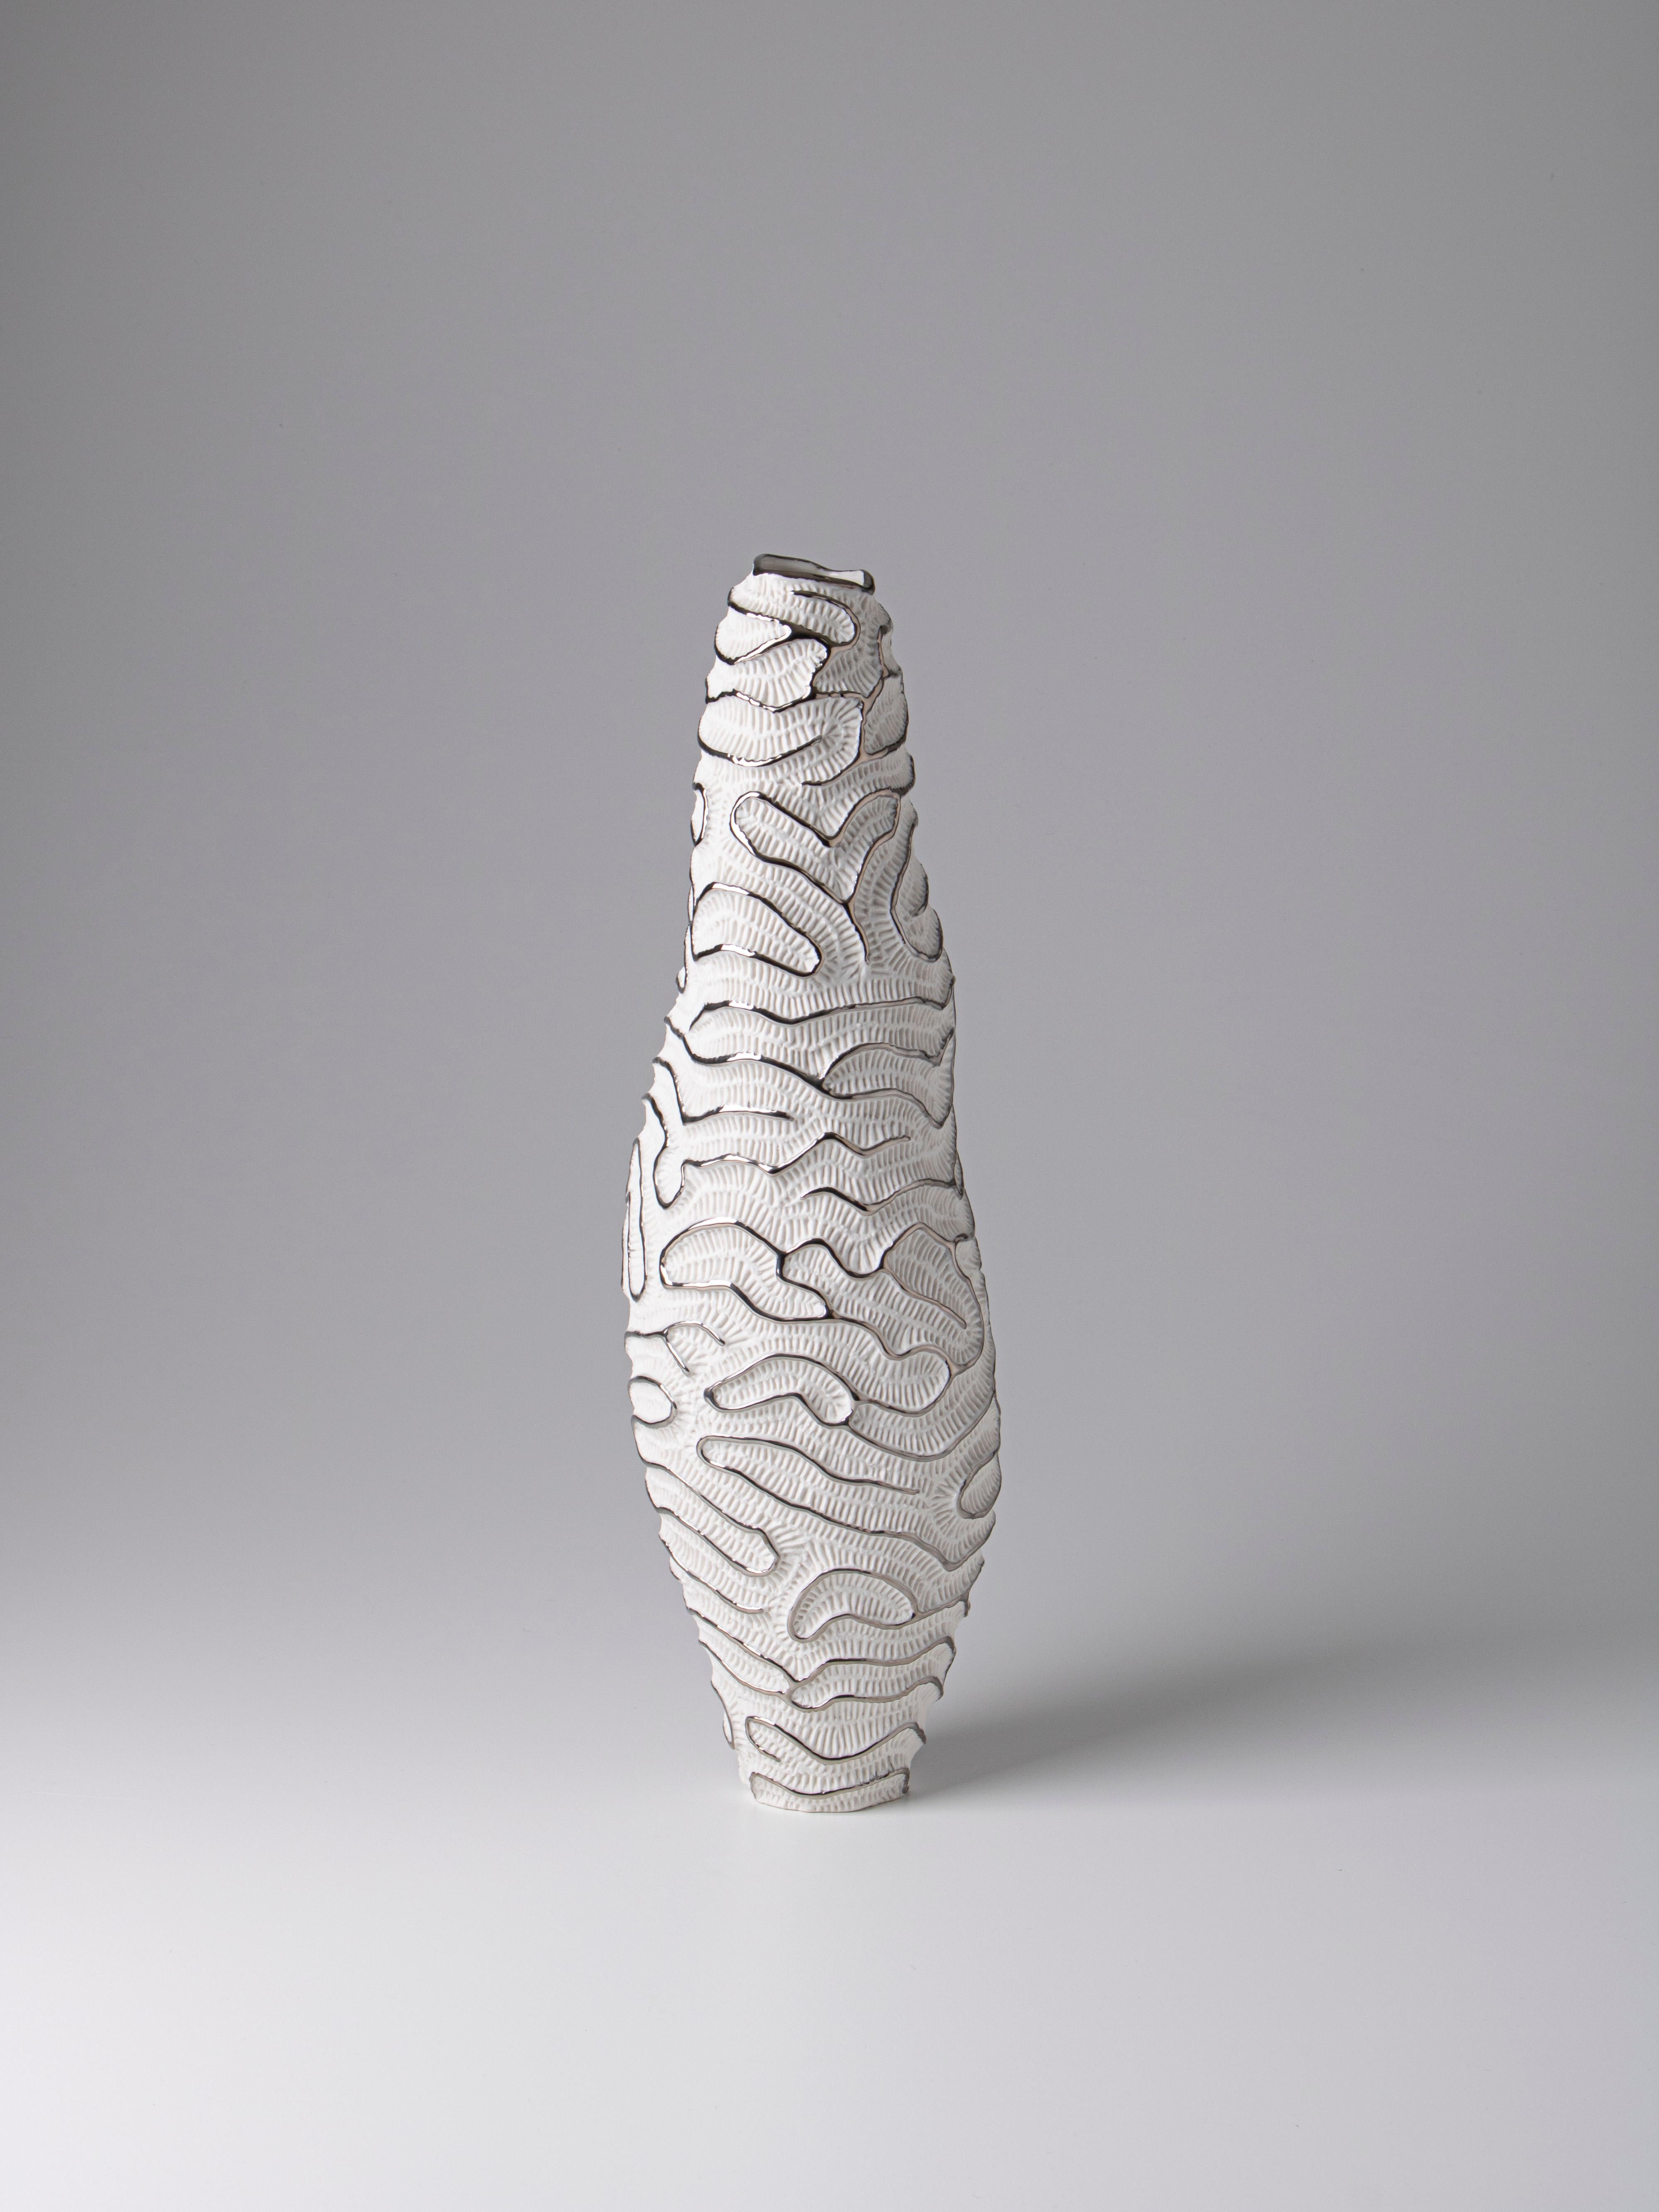 Italian Contemporary Porcelain Vase Platinum Sea Fossil Texture Ceramic Italy Fos